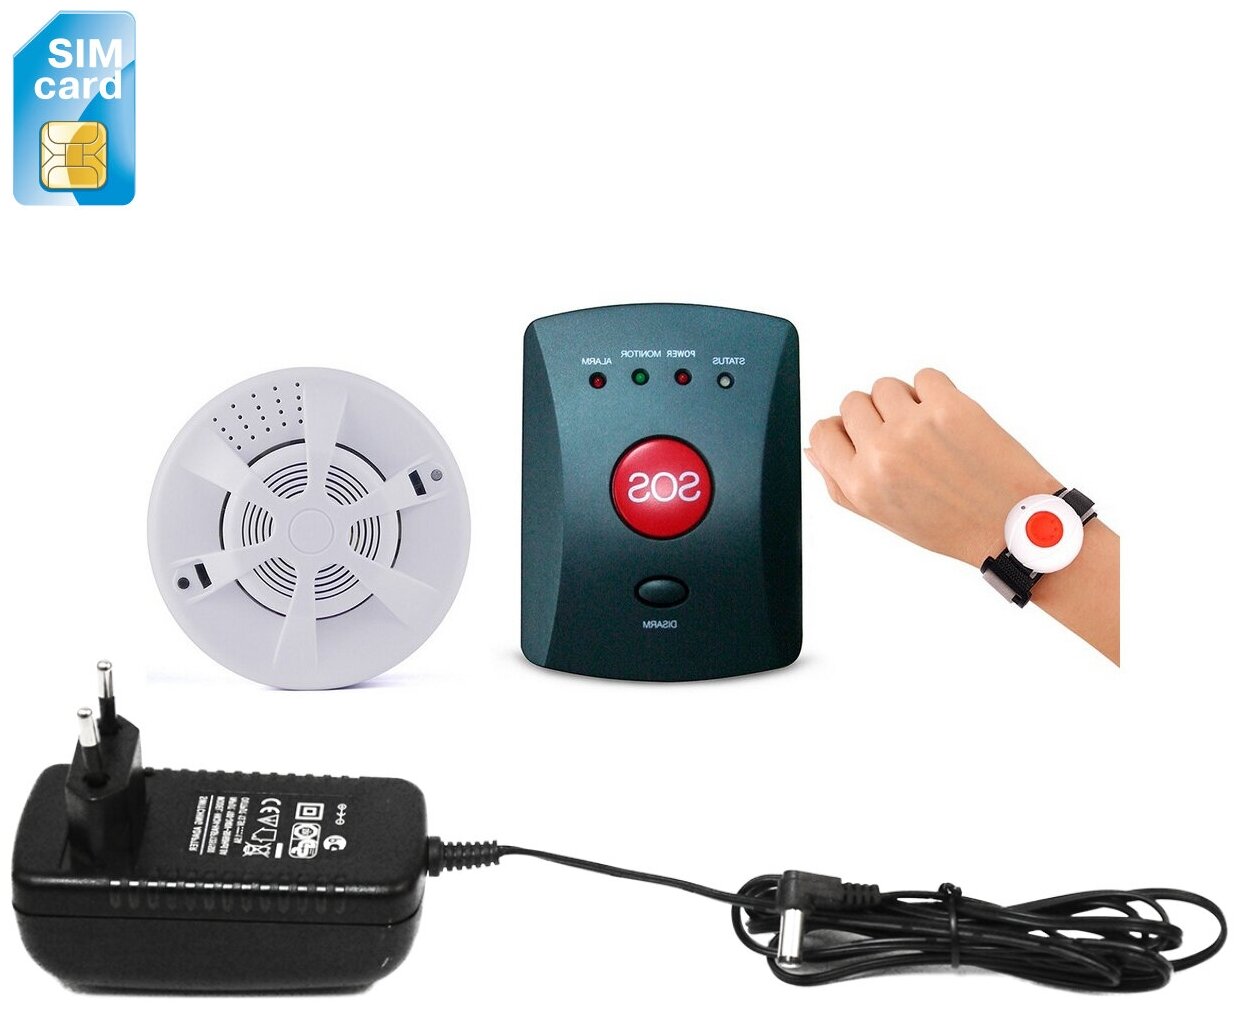 Тревожная кнопка Straz-GSM-03 (СОС-DYM) (A19324EB) - кнопки тревожной сигнализации, тревожная кнопка охрана, пожарная сигнализация